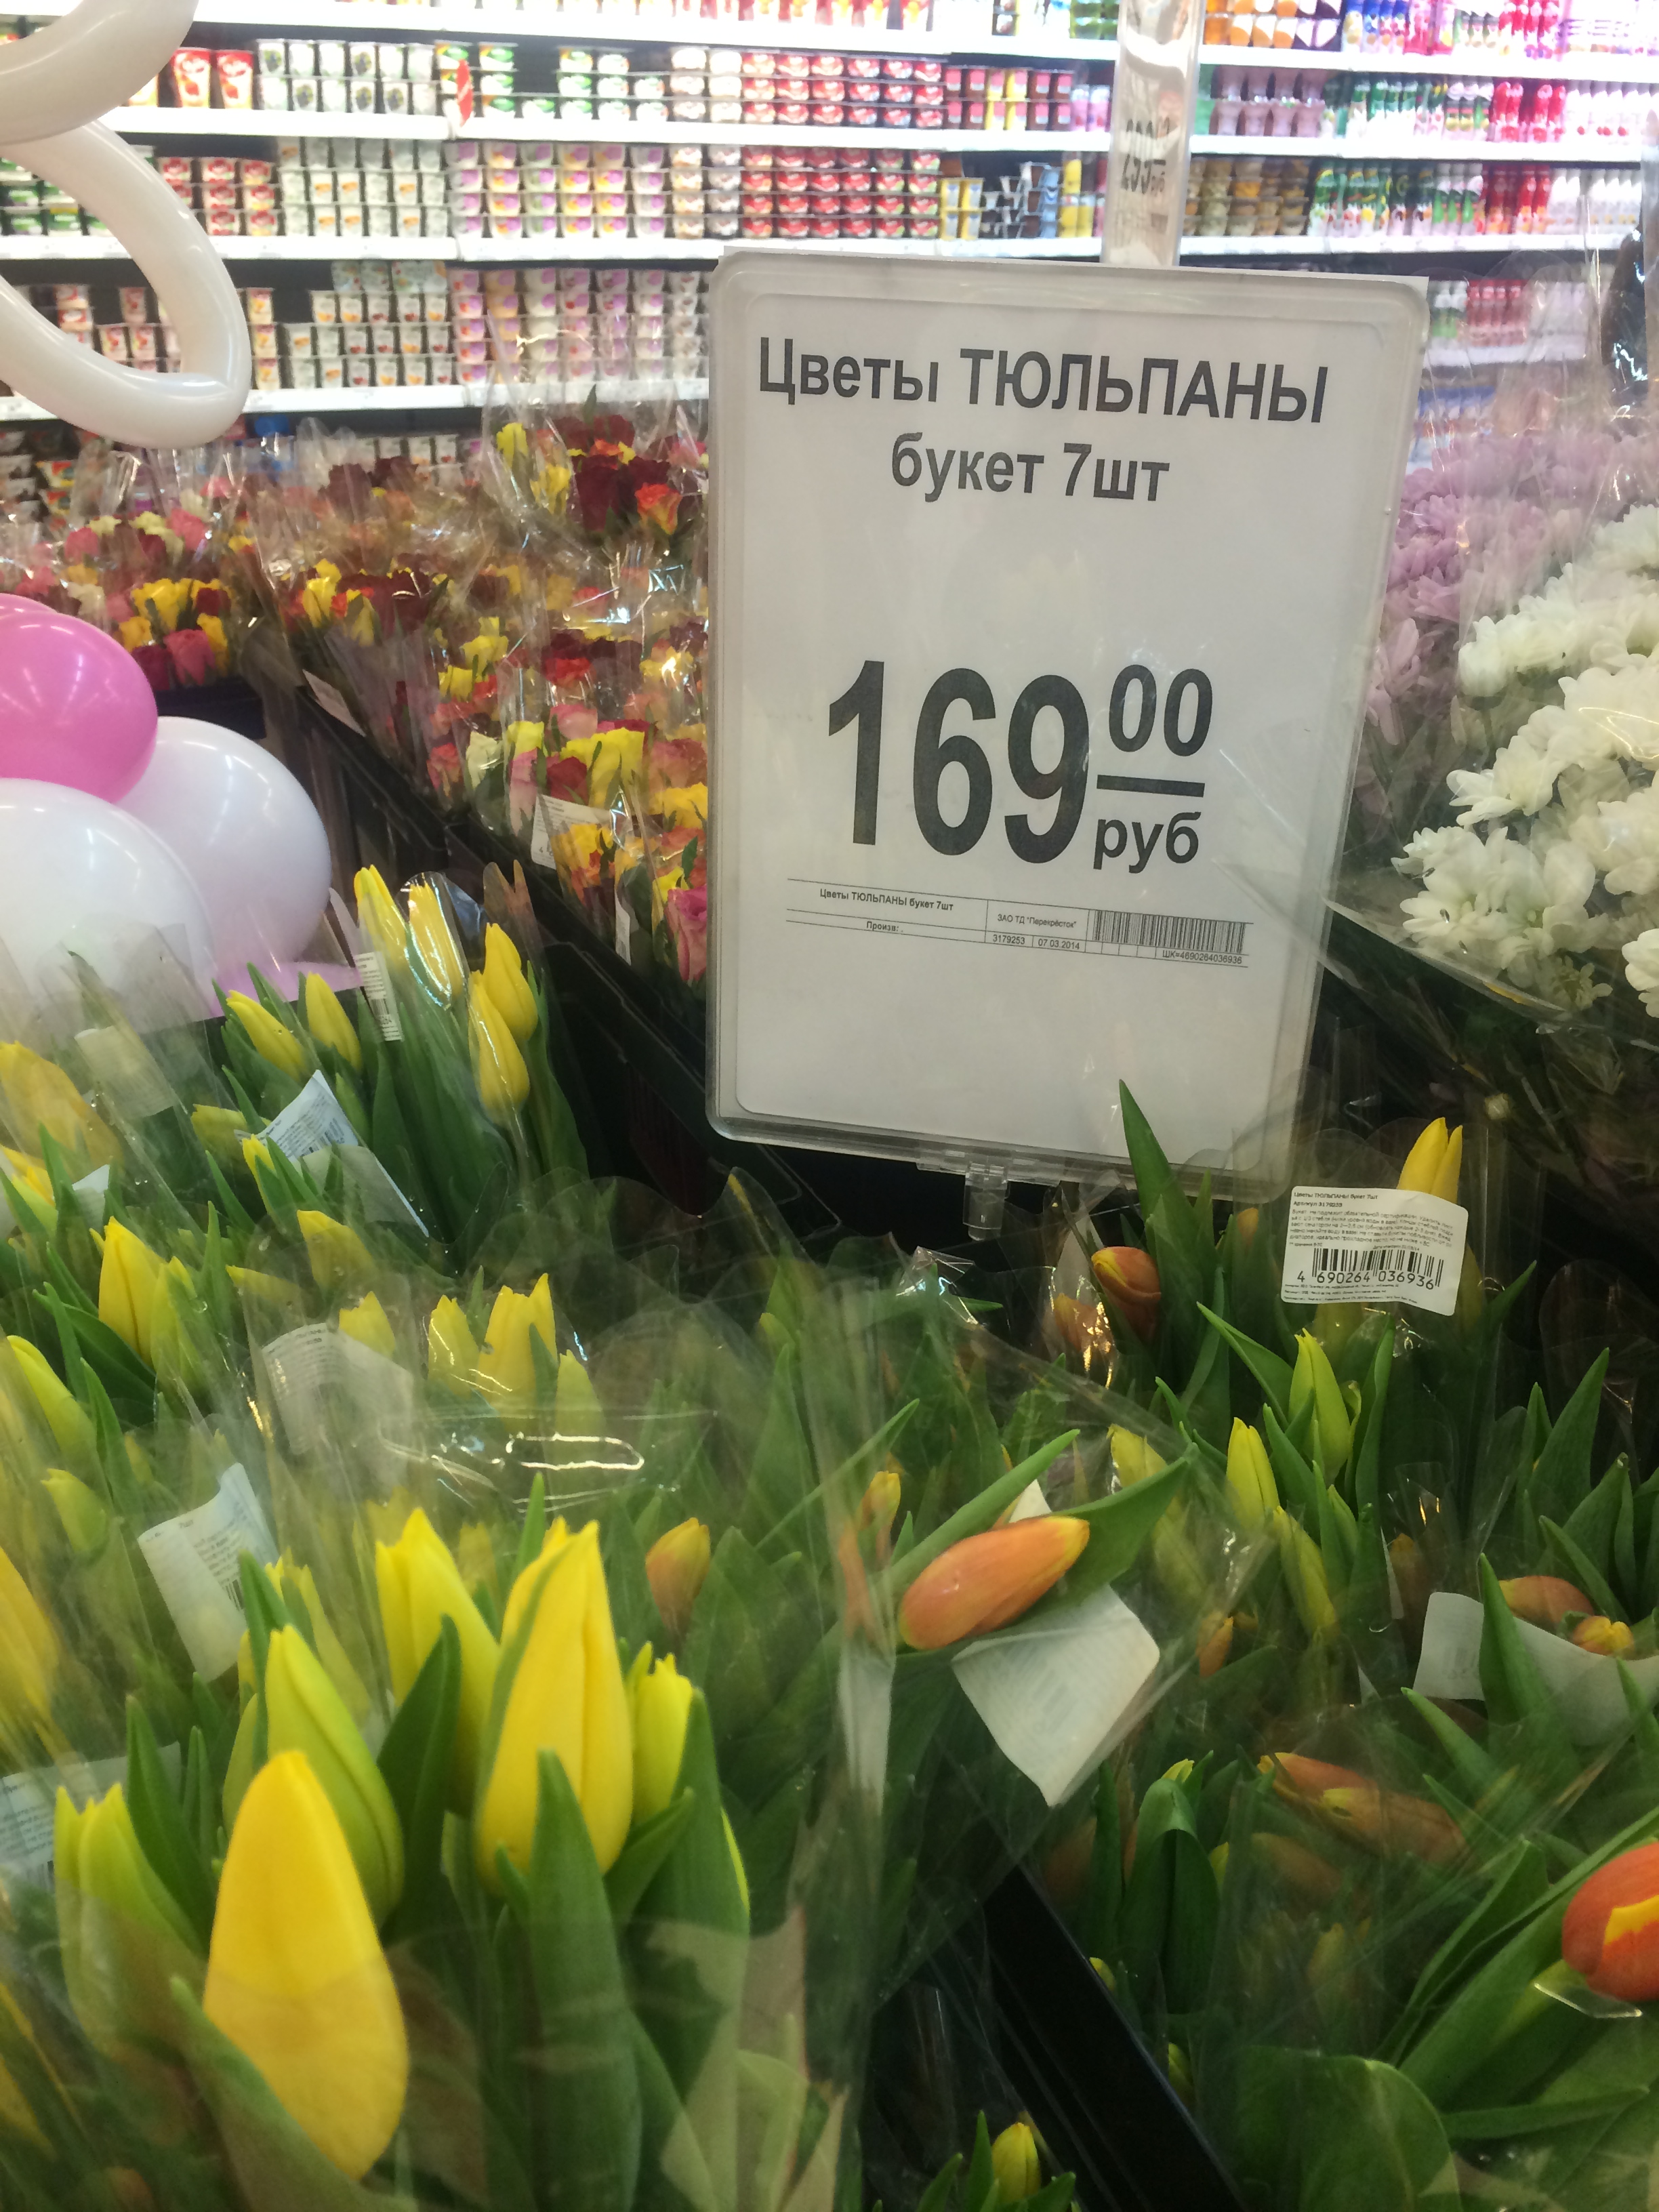 Купить тюльпаны в улан удэ. Тюльпаны в цветочном магазине. Ценники для цветочного магазина. Тюльпаны в супермаркетах. Цветы в супермаркете.